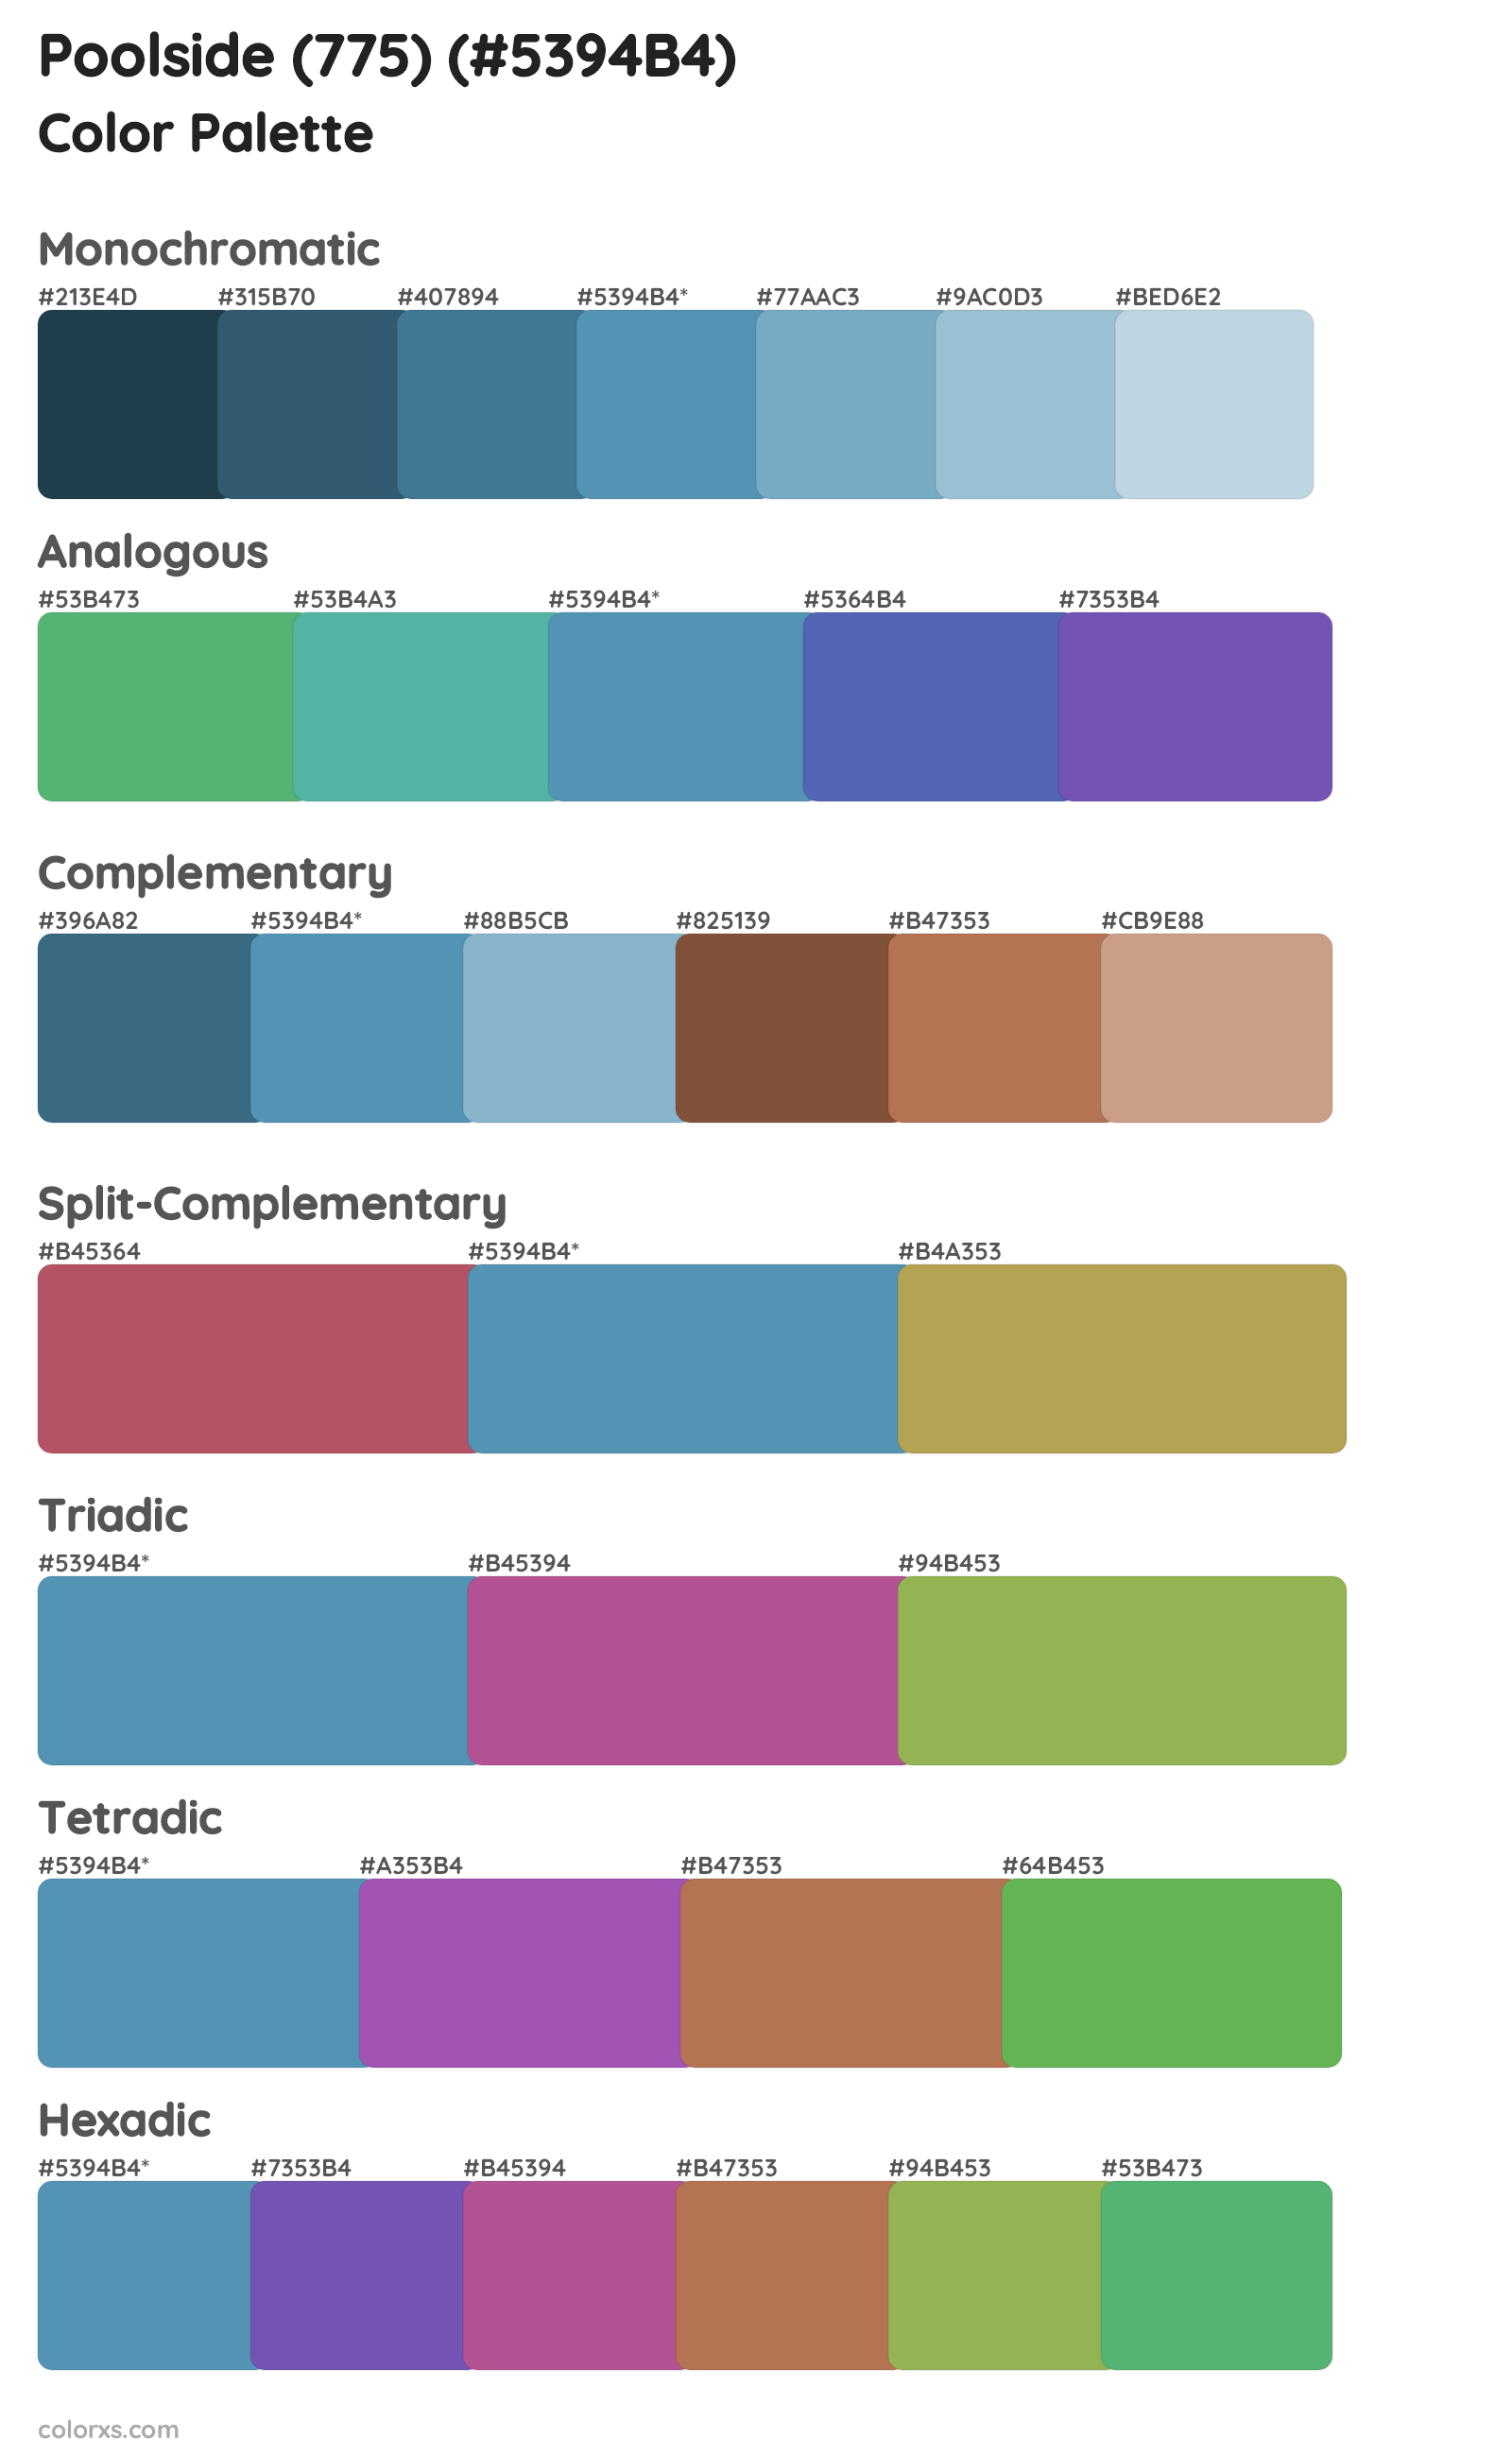 Poolside (775) Color Scheme Palettes